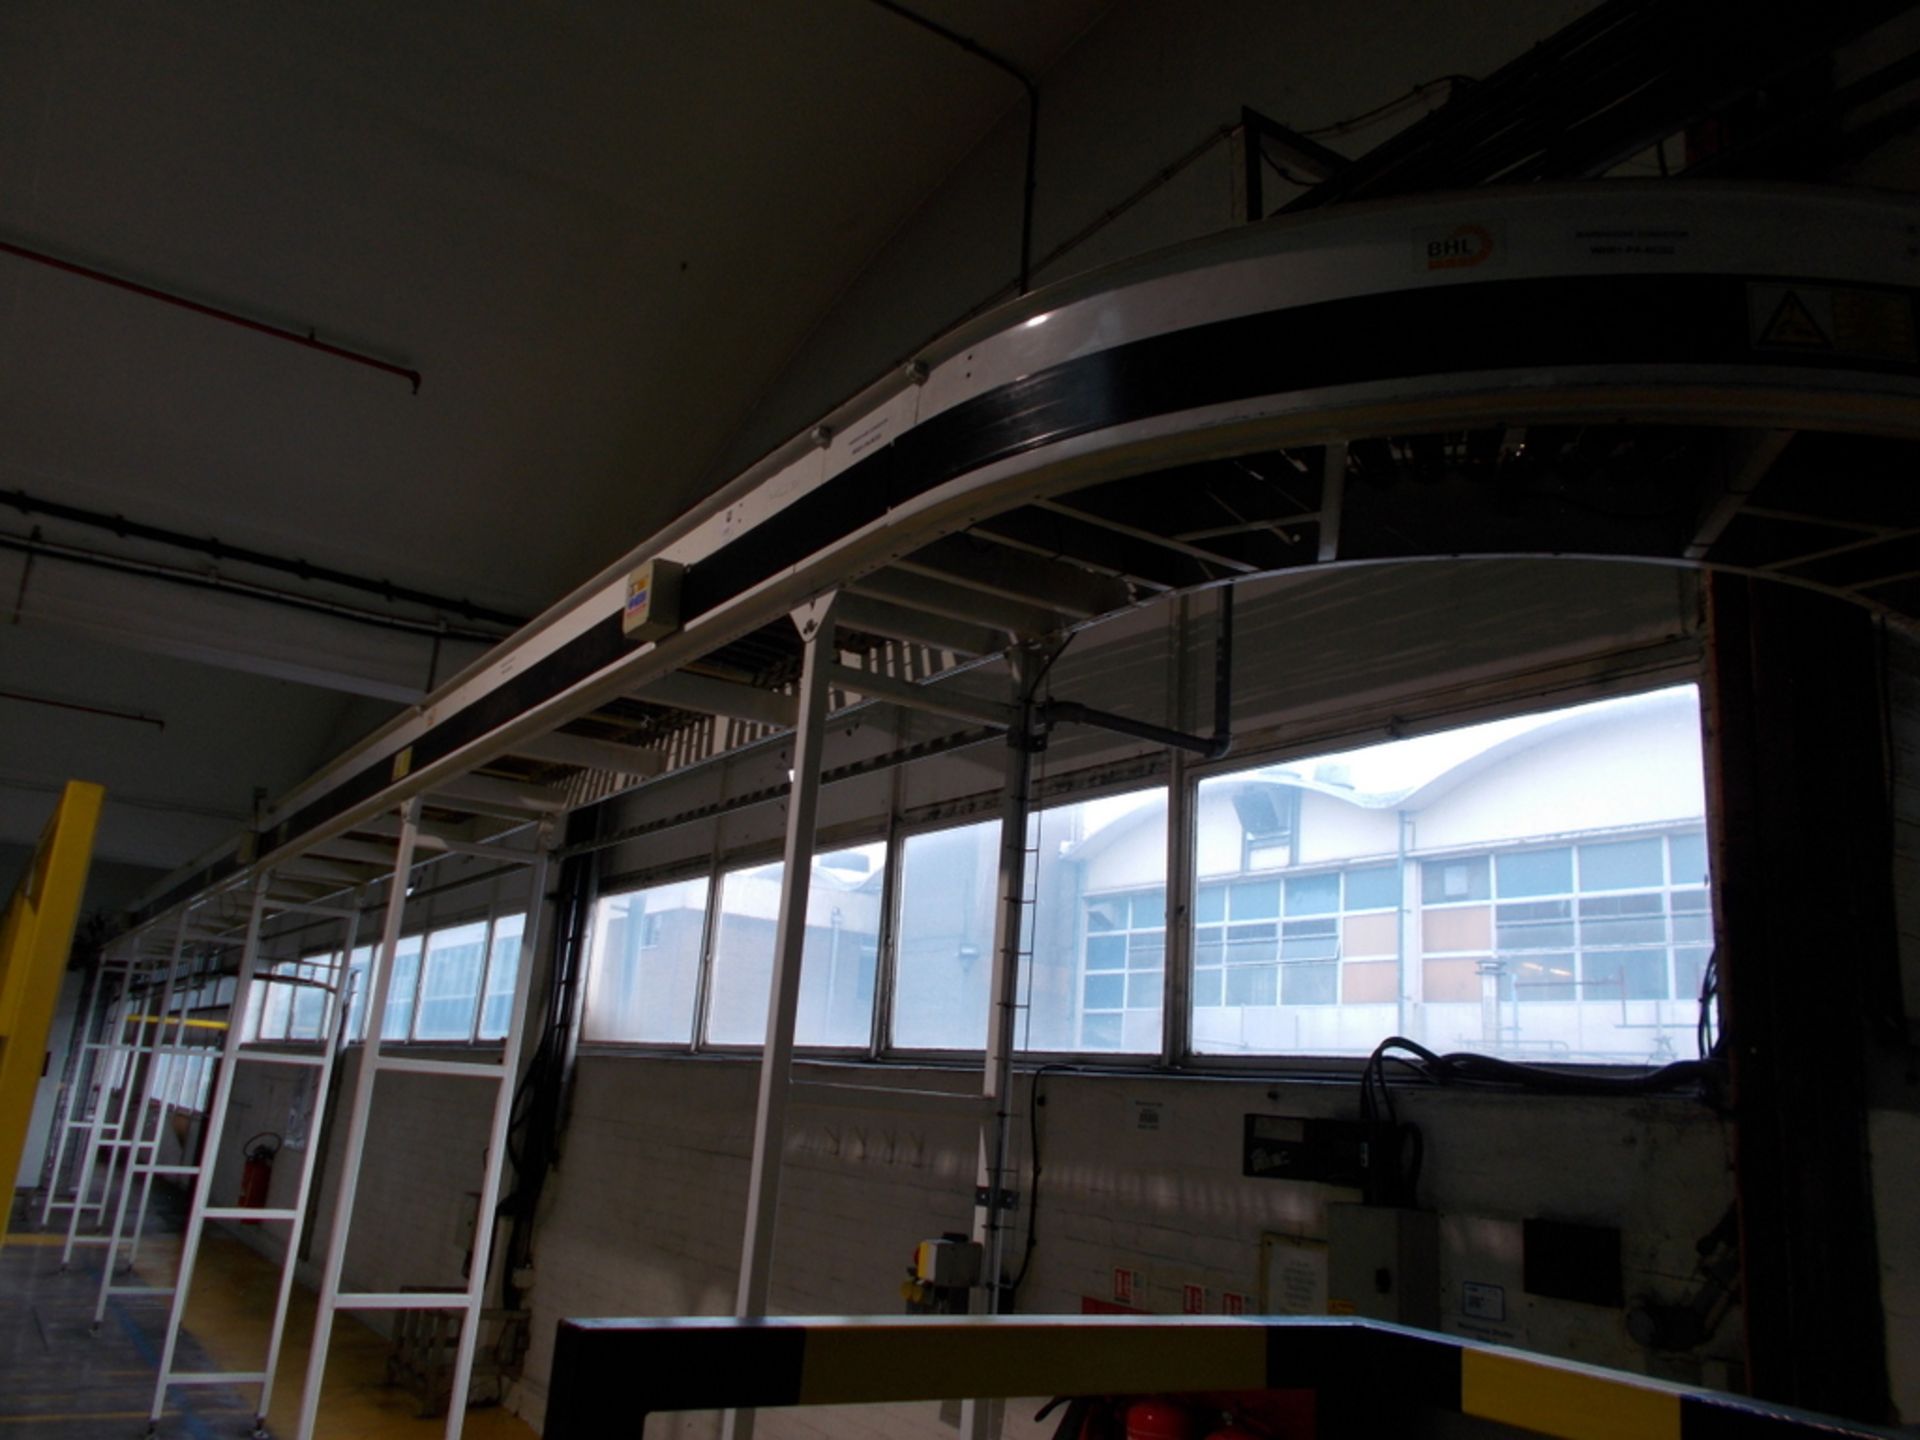 BHL overhead conveyor - Image 5 of 16